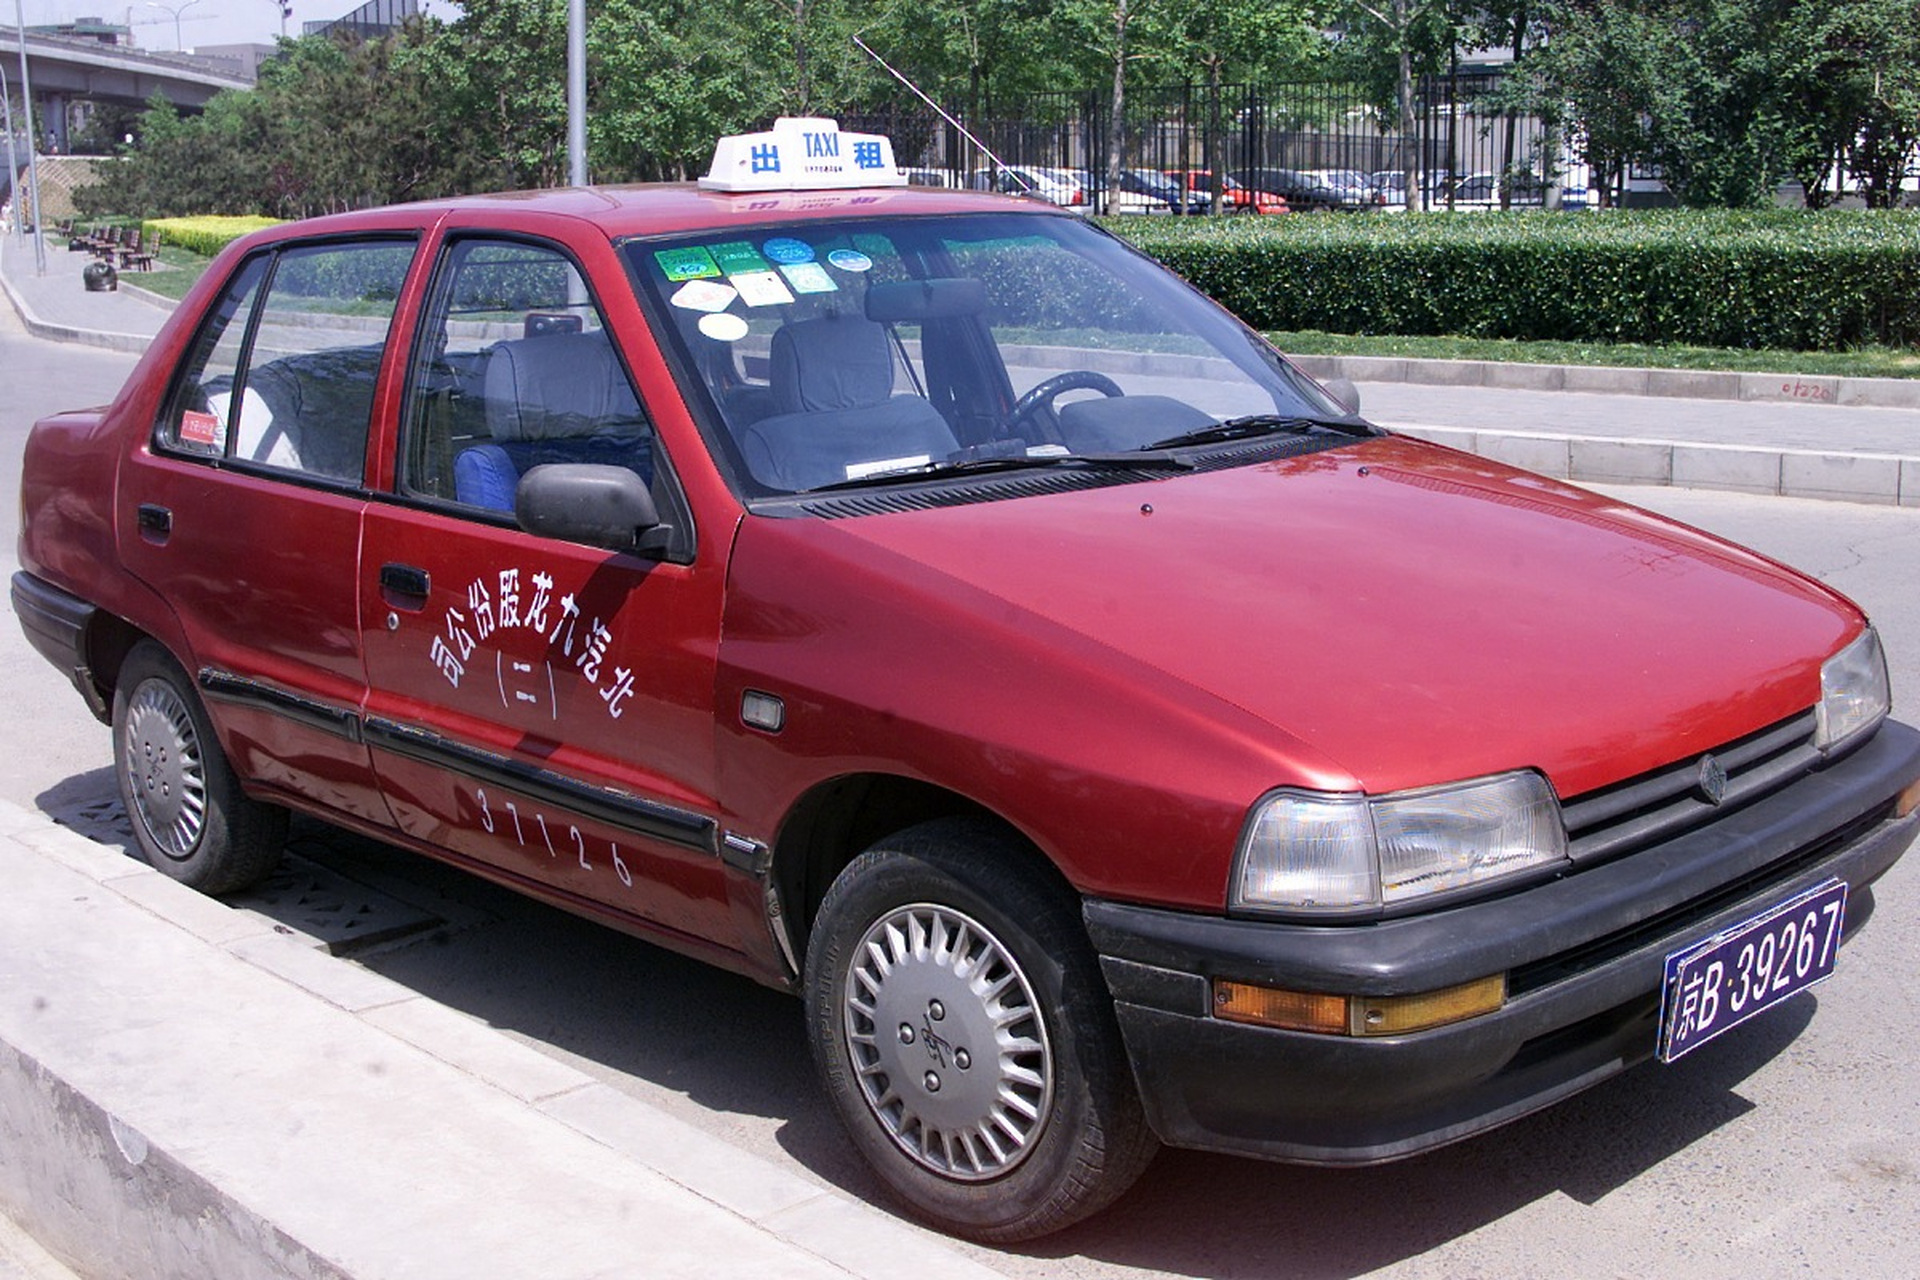 经典国民神车——夏利         天津夏利7100是90年代的国民神车,也是